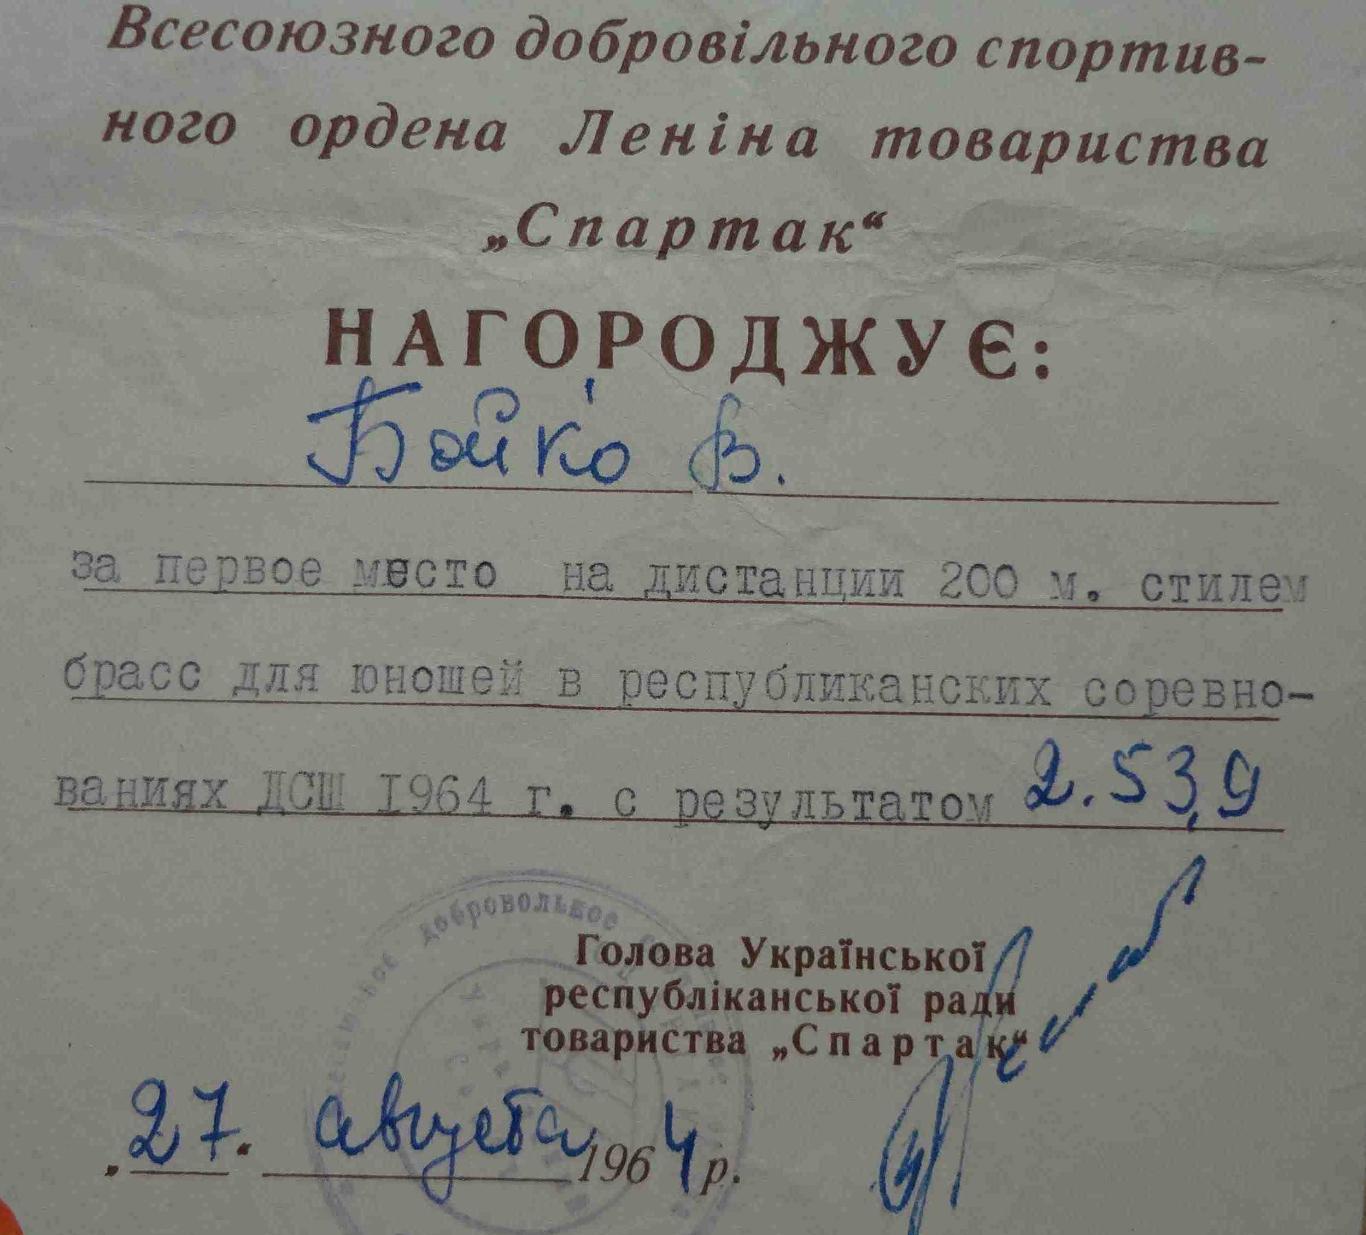 Диплом 1 степени Украинский республиканский совет ДСО Спартак 1964 плавание (11) 1